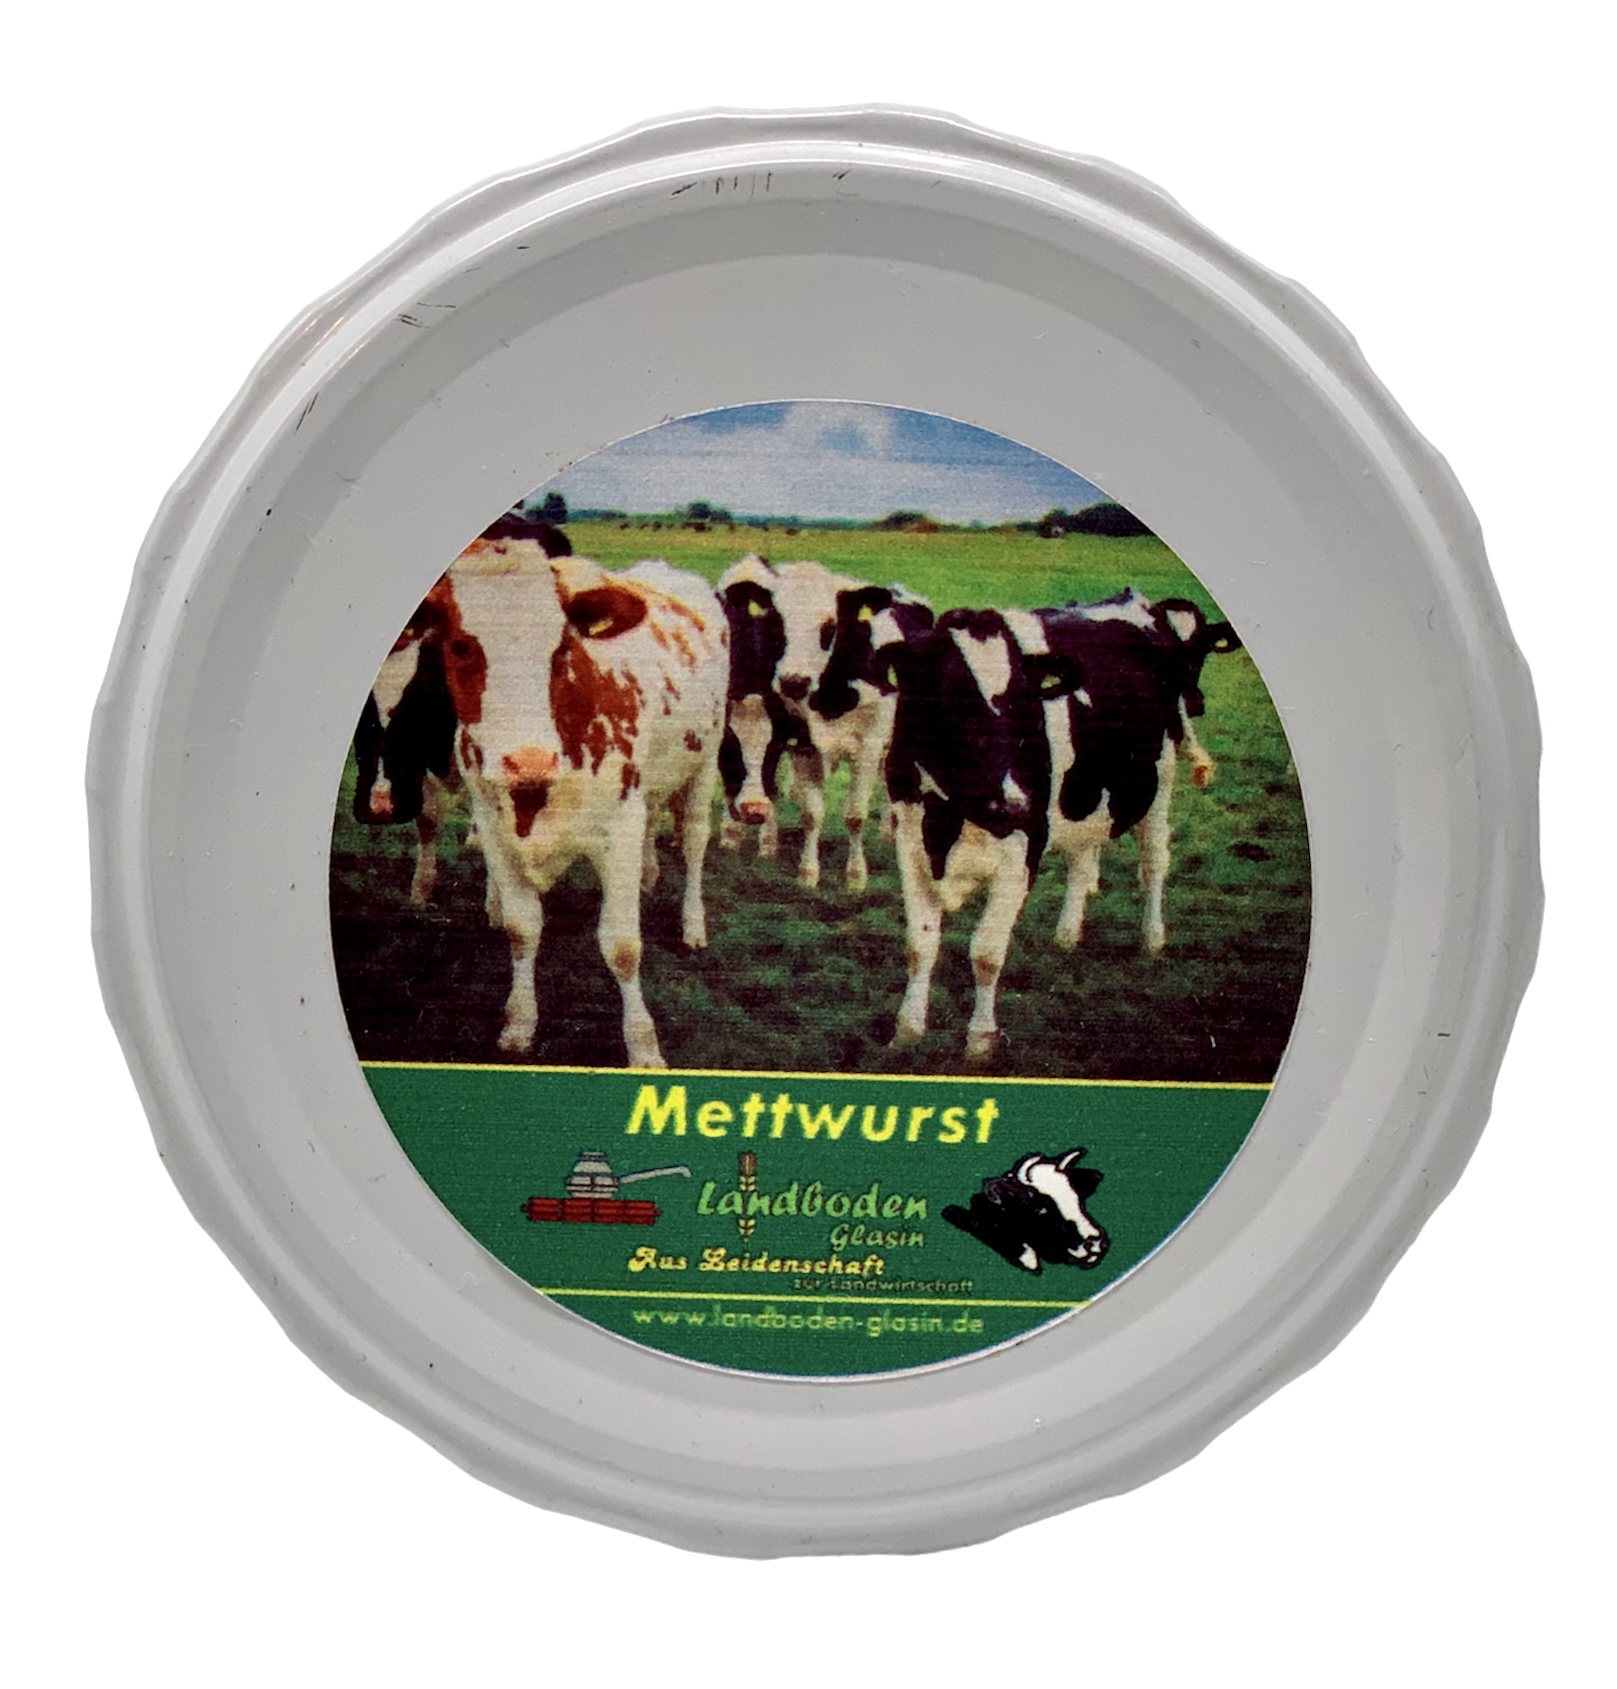 Rinder-Mettwurst vom Landboden Glasin im 160 g Glas 